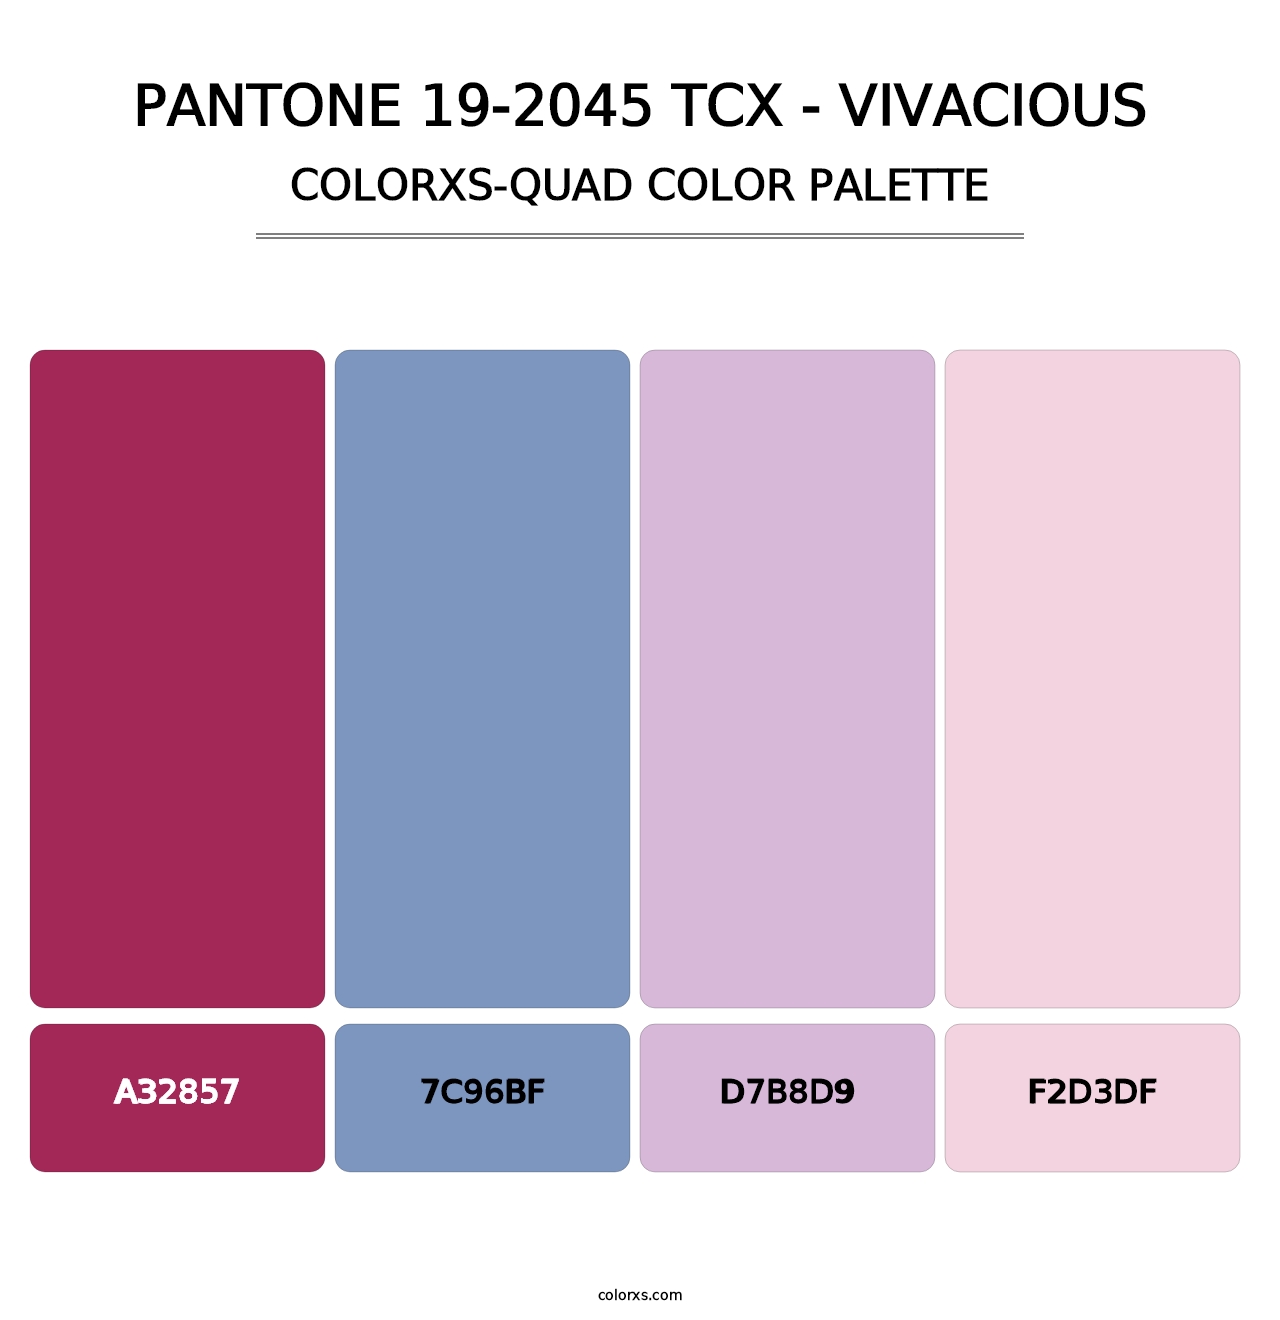 PANTONE 19-2045 TCX - Vivacious - Colorxs Quad Palette